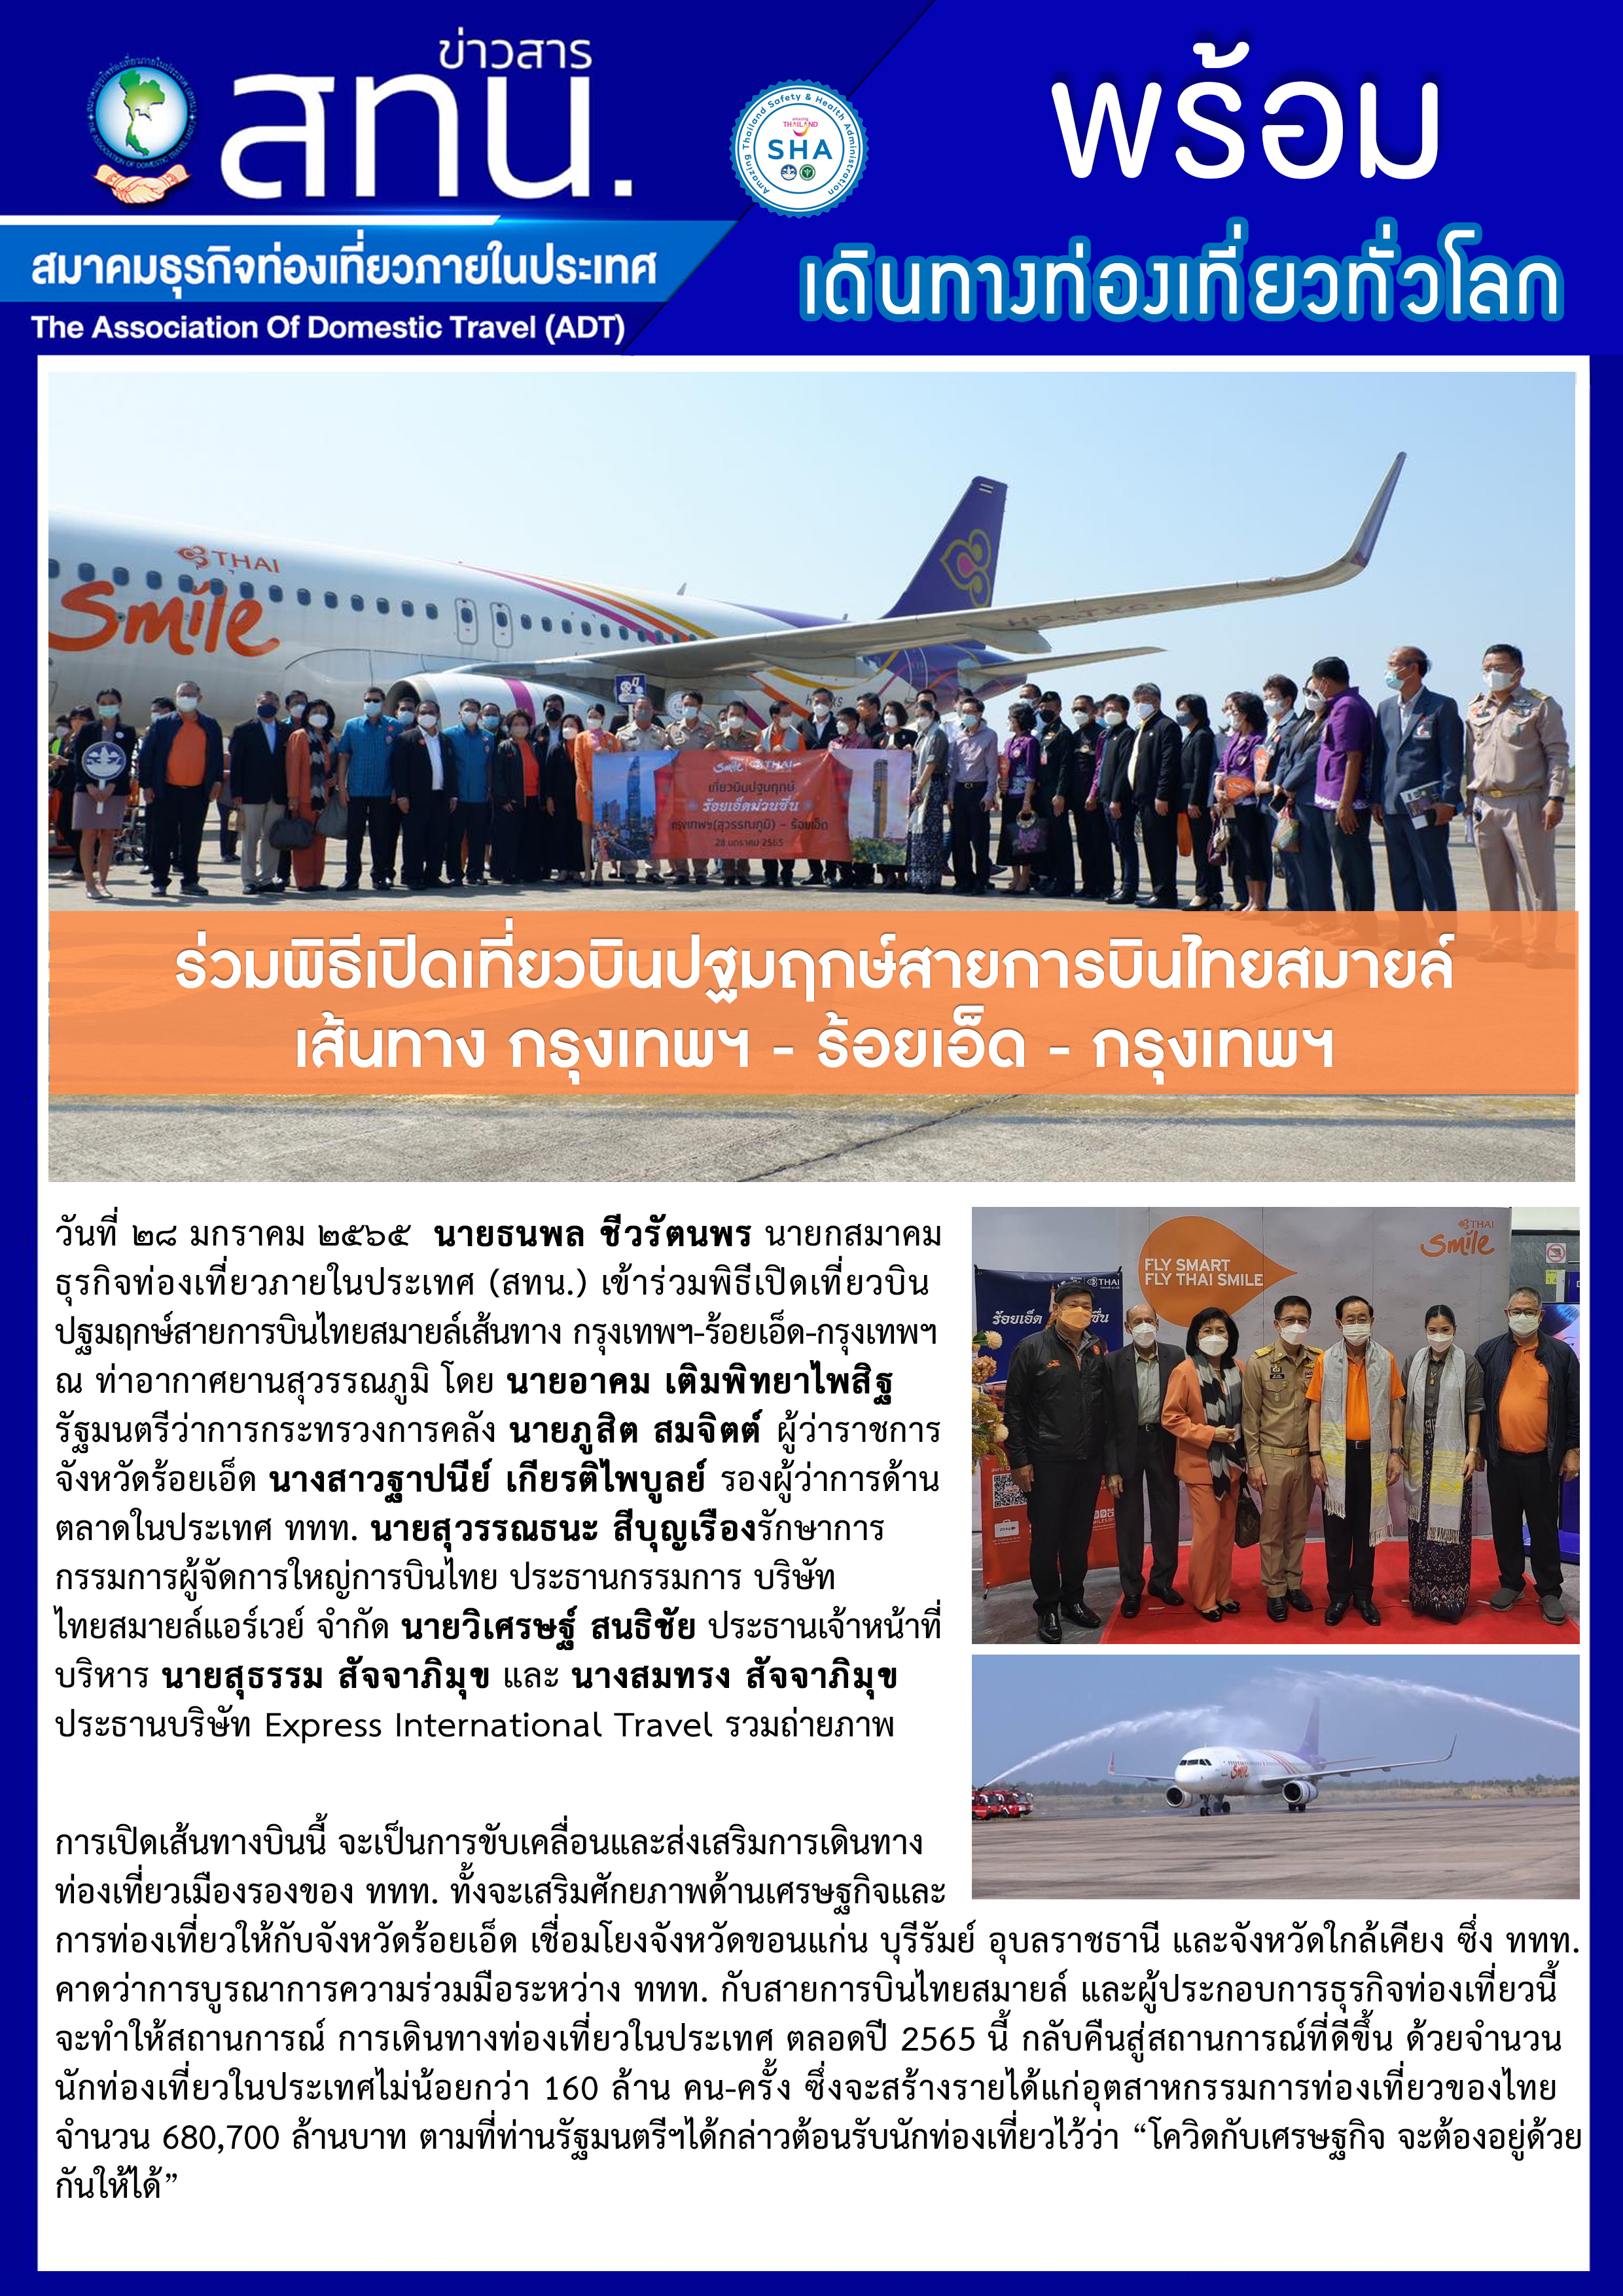 สทน. ร่วมพิธีเปิดเที่ยวบินปฐมฤกษ์สายการบินไทยสมายล์เส้นทาง กรุงเทพฯ - ร้อยเอ็ด - กรุงเทพฯ